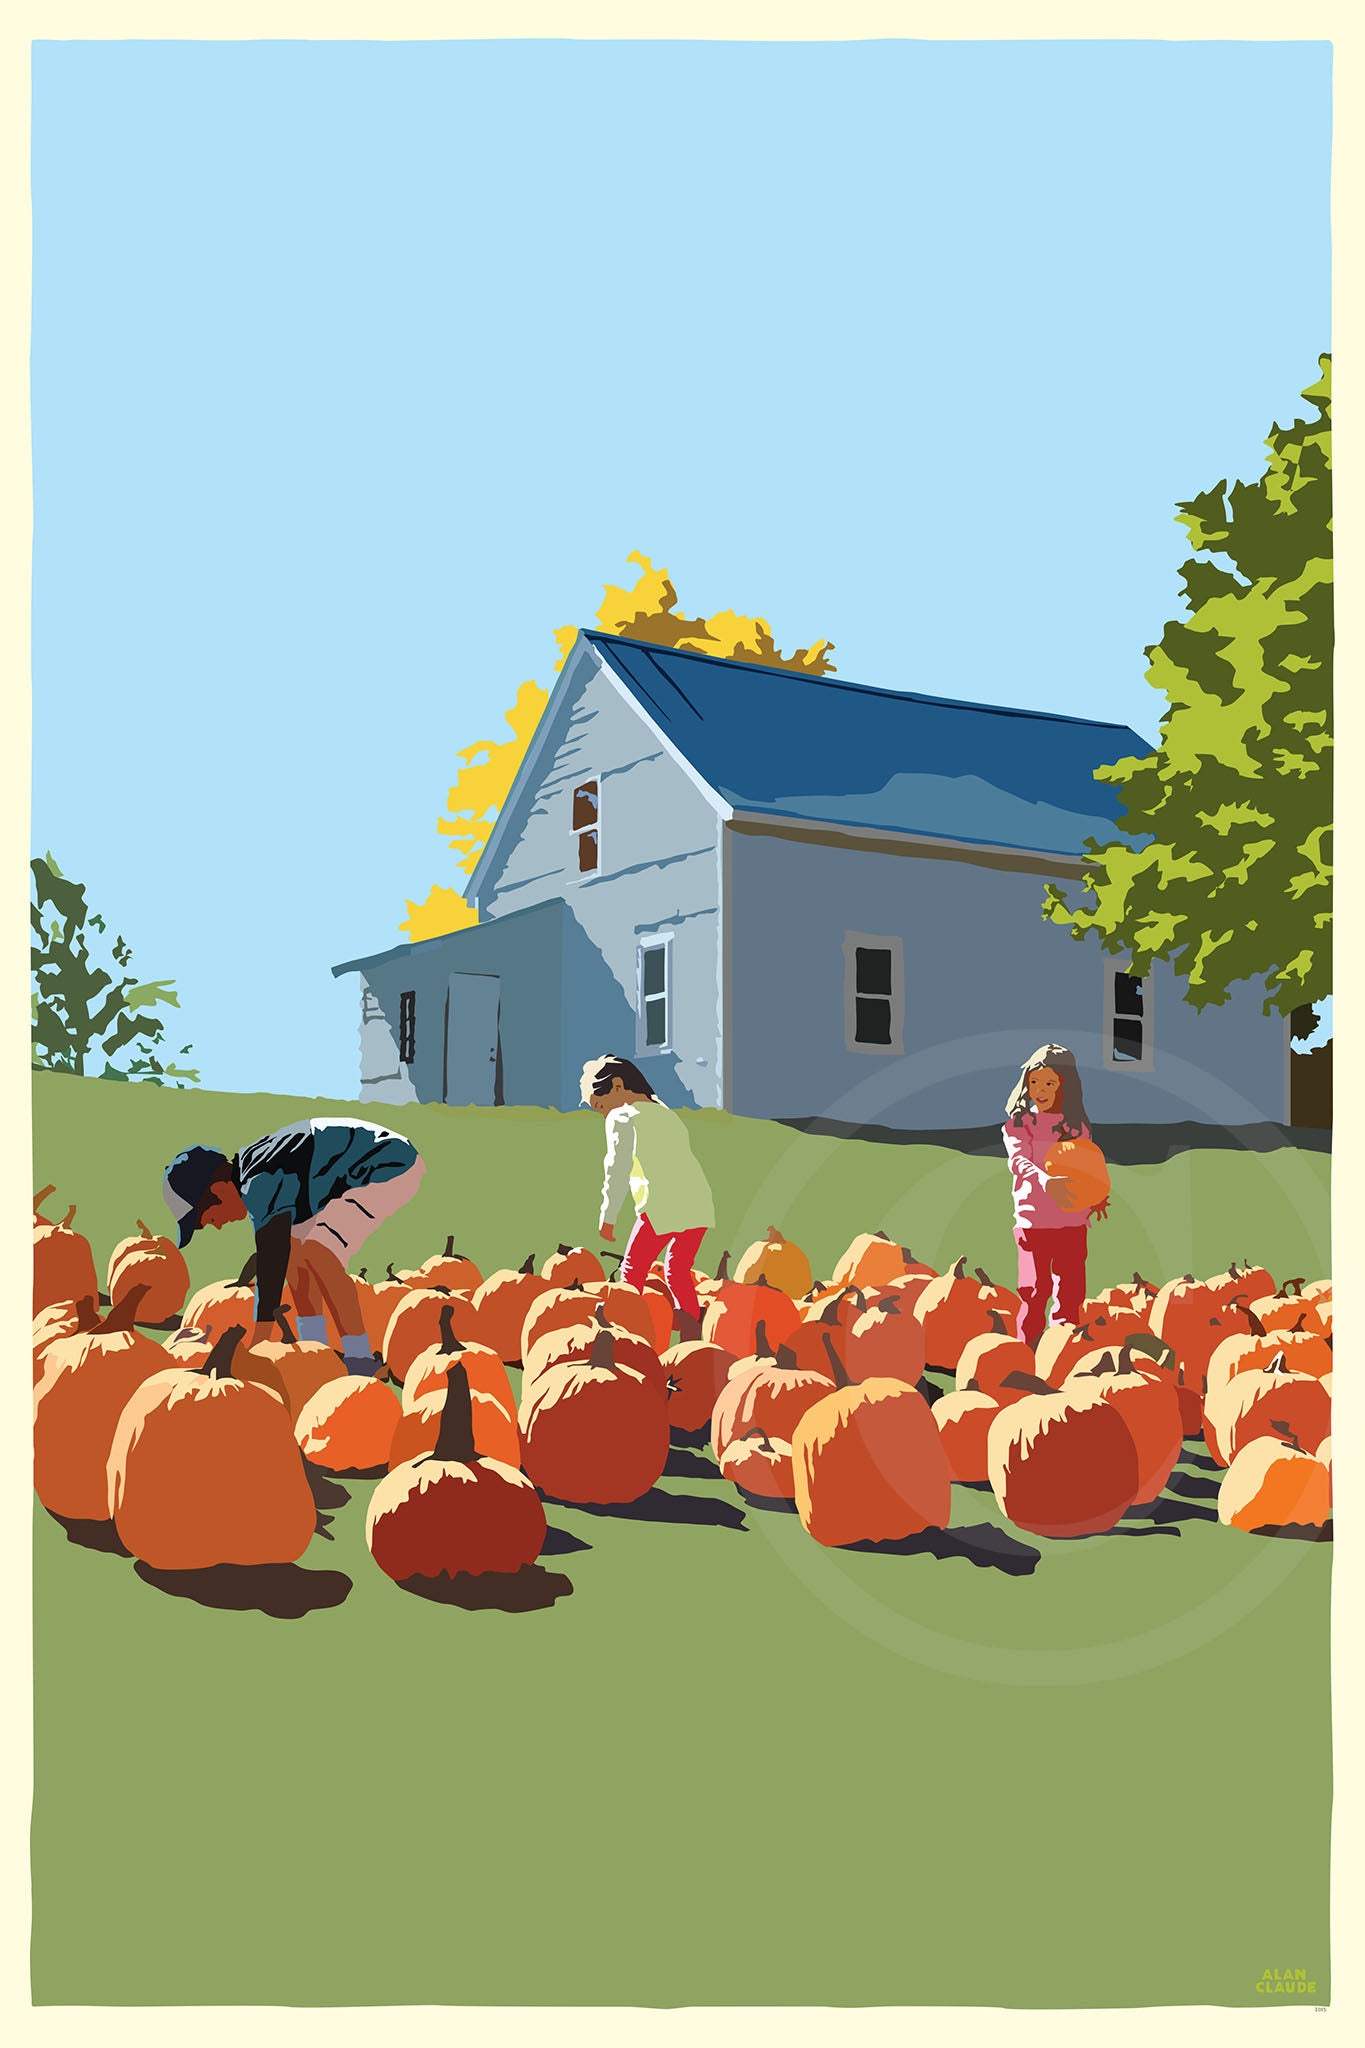 Fall Pumpkin Kids Art Print 24" x 36" Wall Poster By Alan Claude - Maine